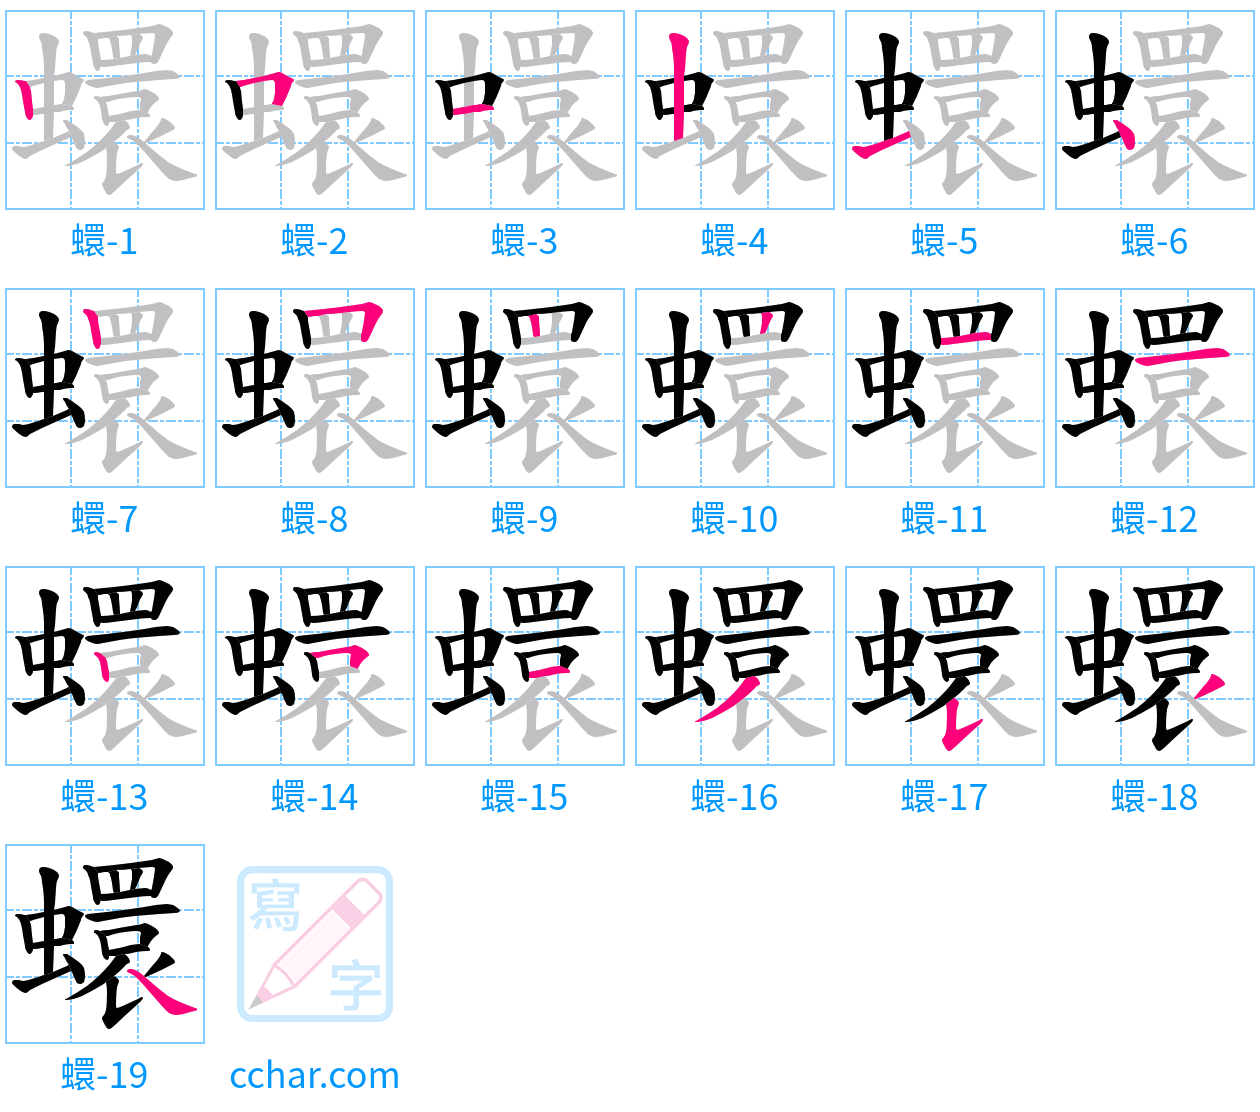 蠉 stroke order step-by-step diagram